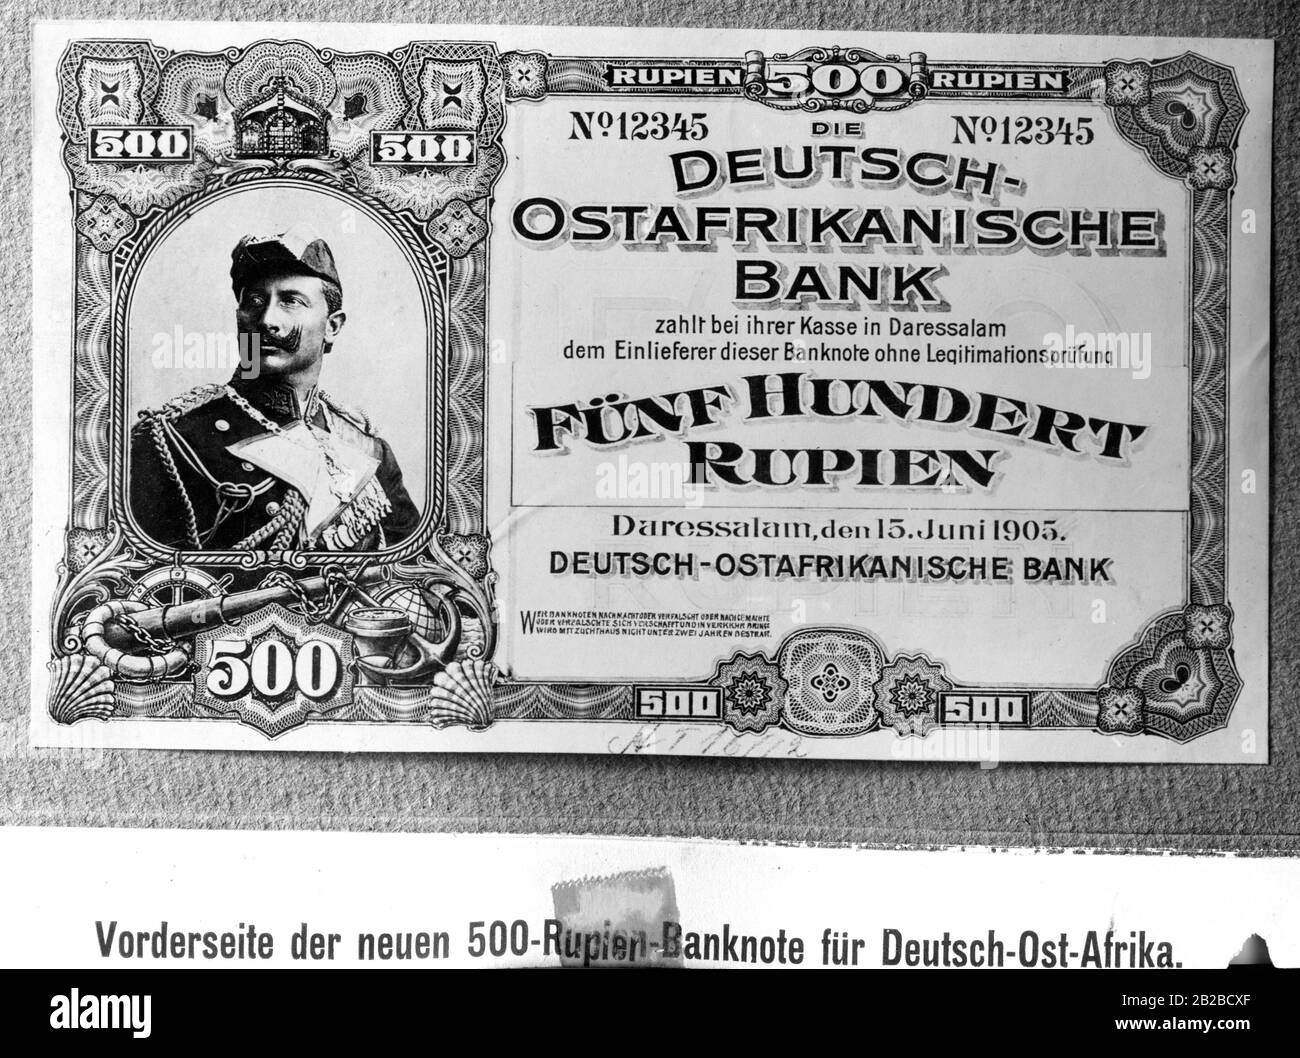 Eine 500-rupie-banknote aus dem deutschen Ostafrika, die bei der Deutschen Ostafrikanischen Bank umgewandelt werden kann. Es zeigt ein Porträt Kaiser Wilhelm II Stockfoto